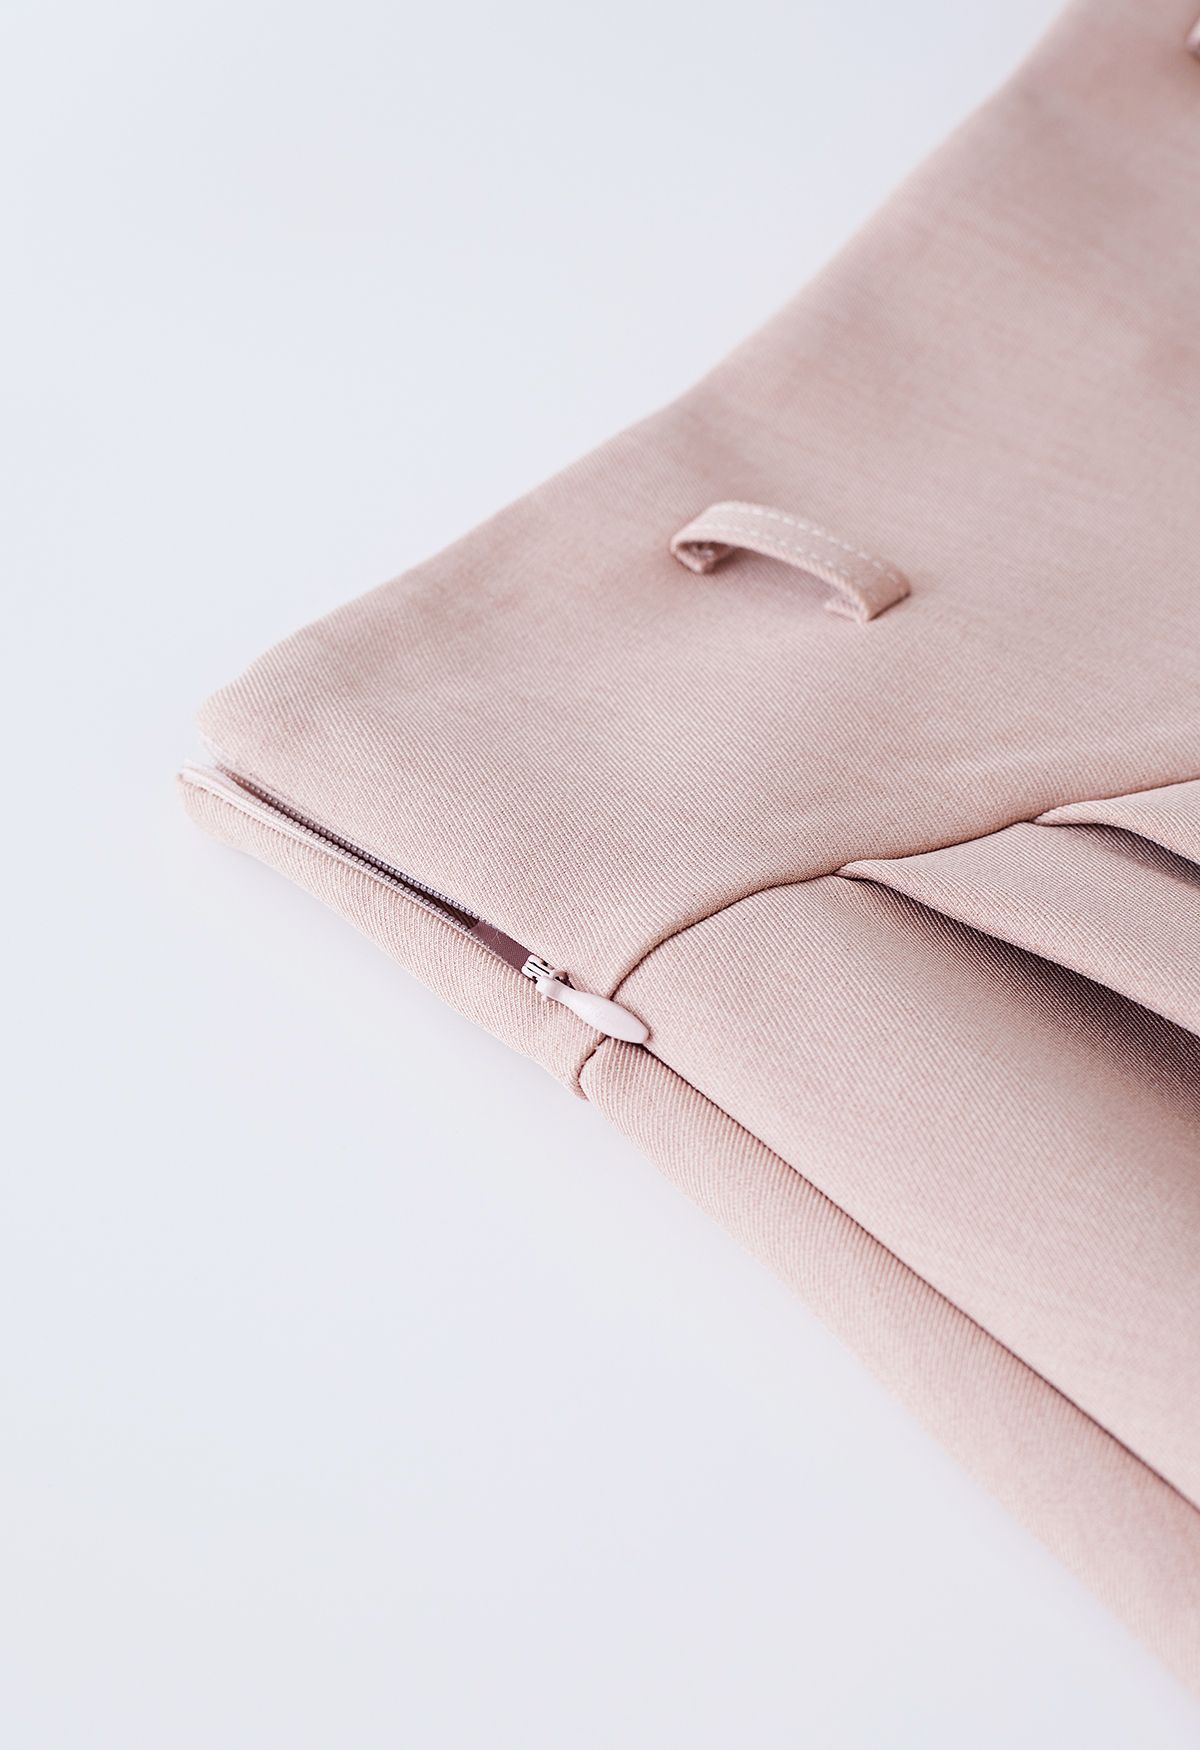 Mini-jupe plissée avec ceinture et détails de couture en rose